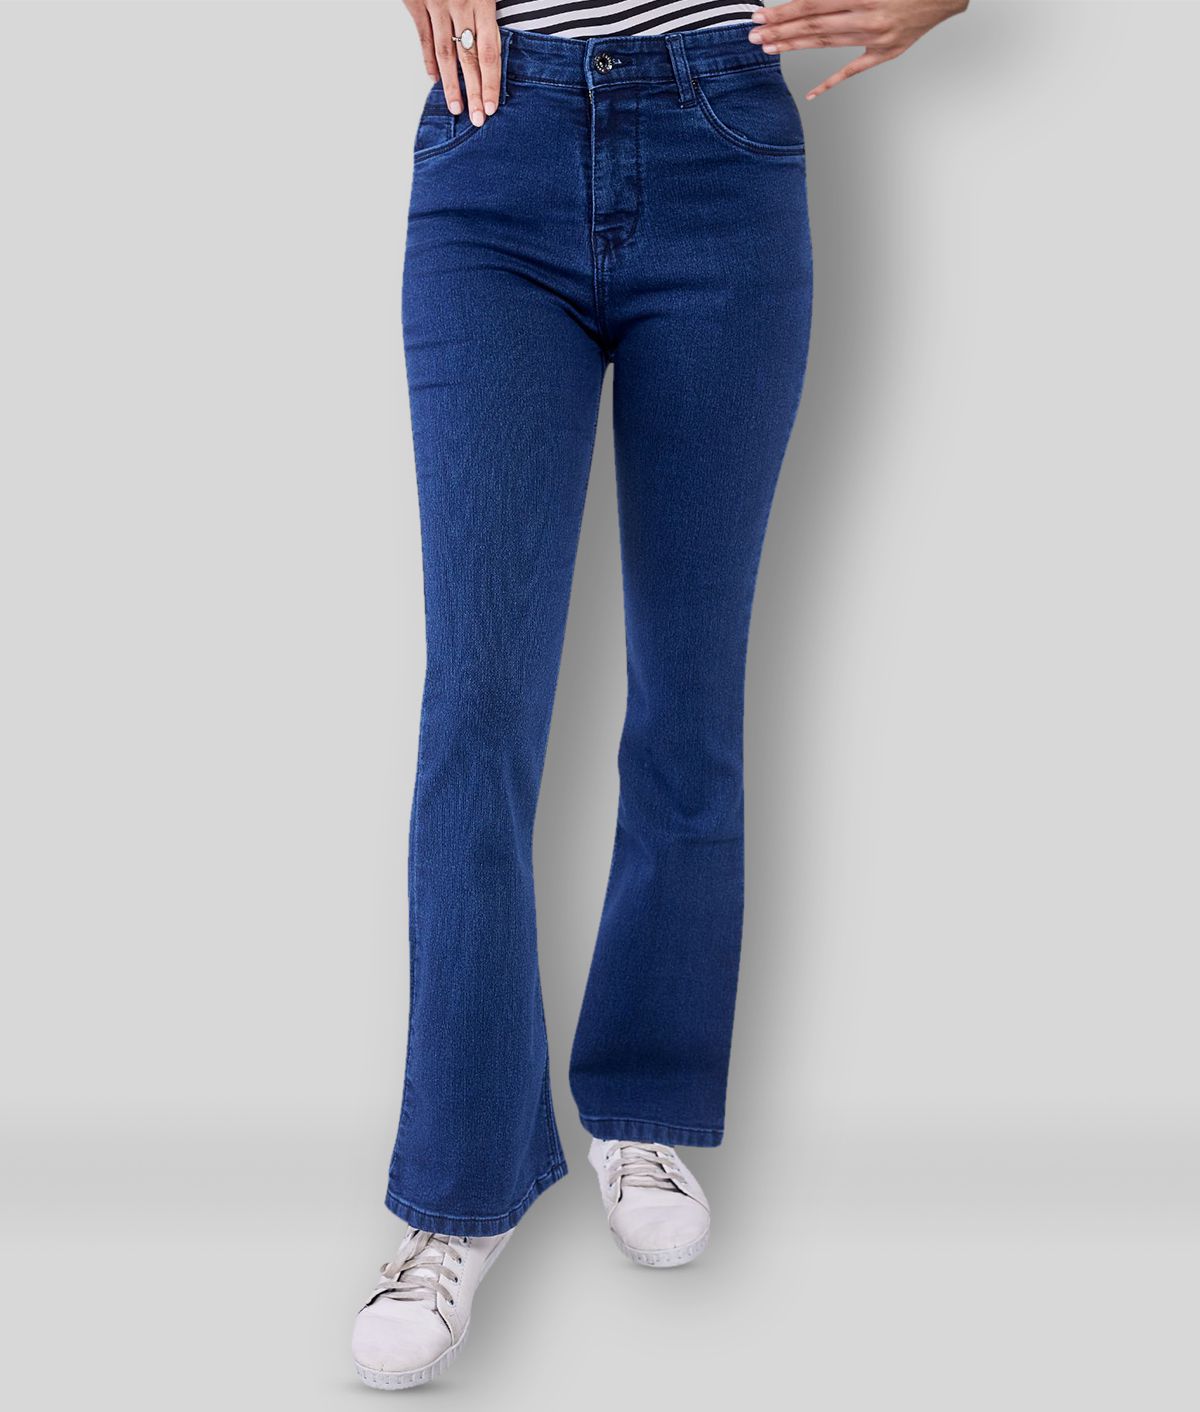 Rea-lize - Blue Cotton Women's Jeans ( Pack of 1 )